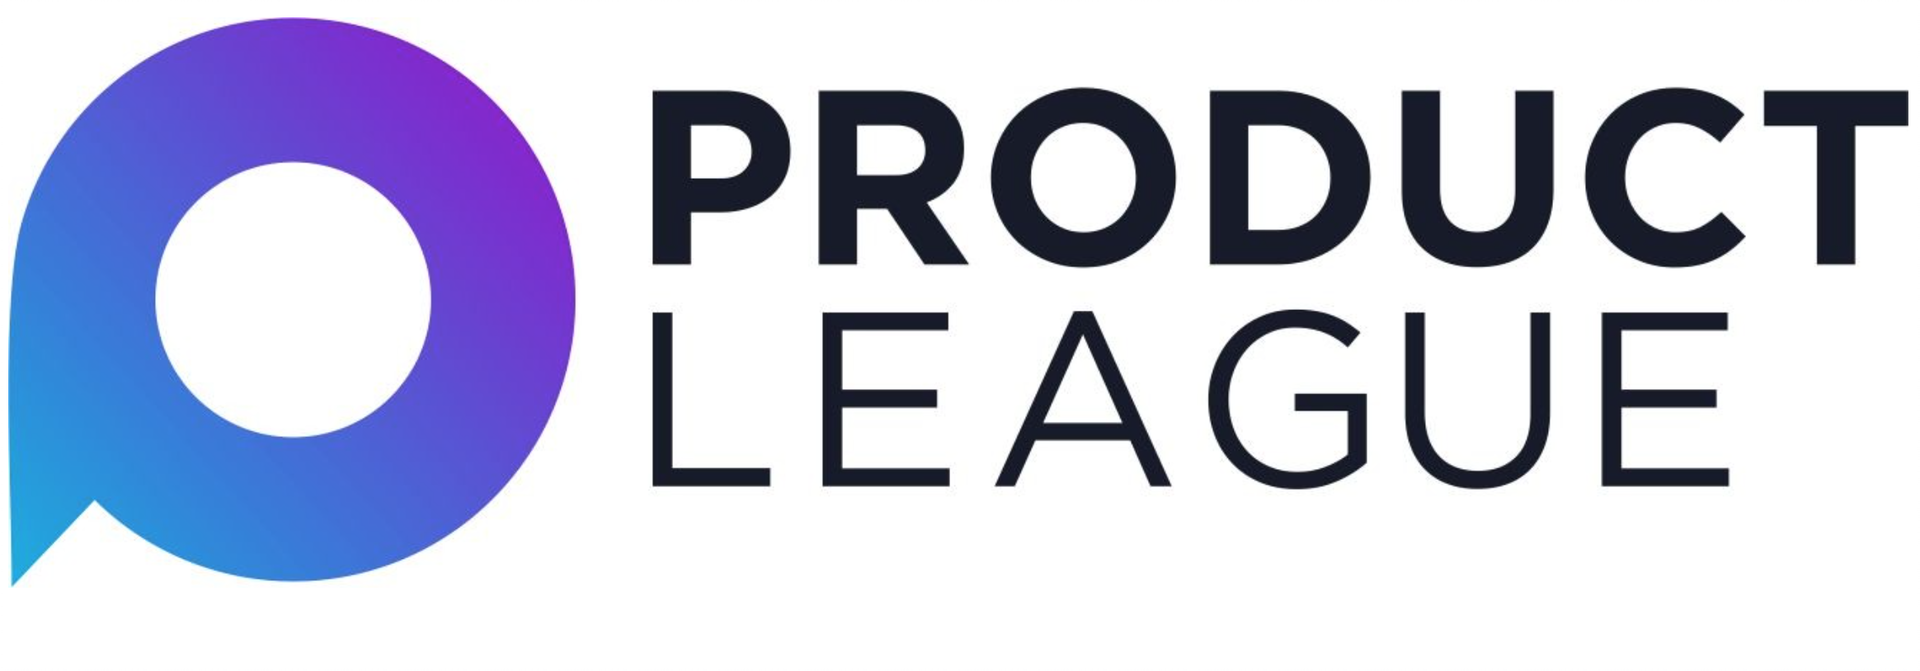 Product League logo - Dirk Kerpel